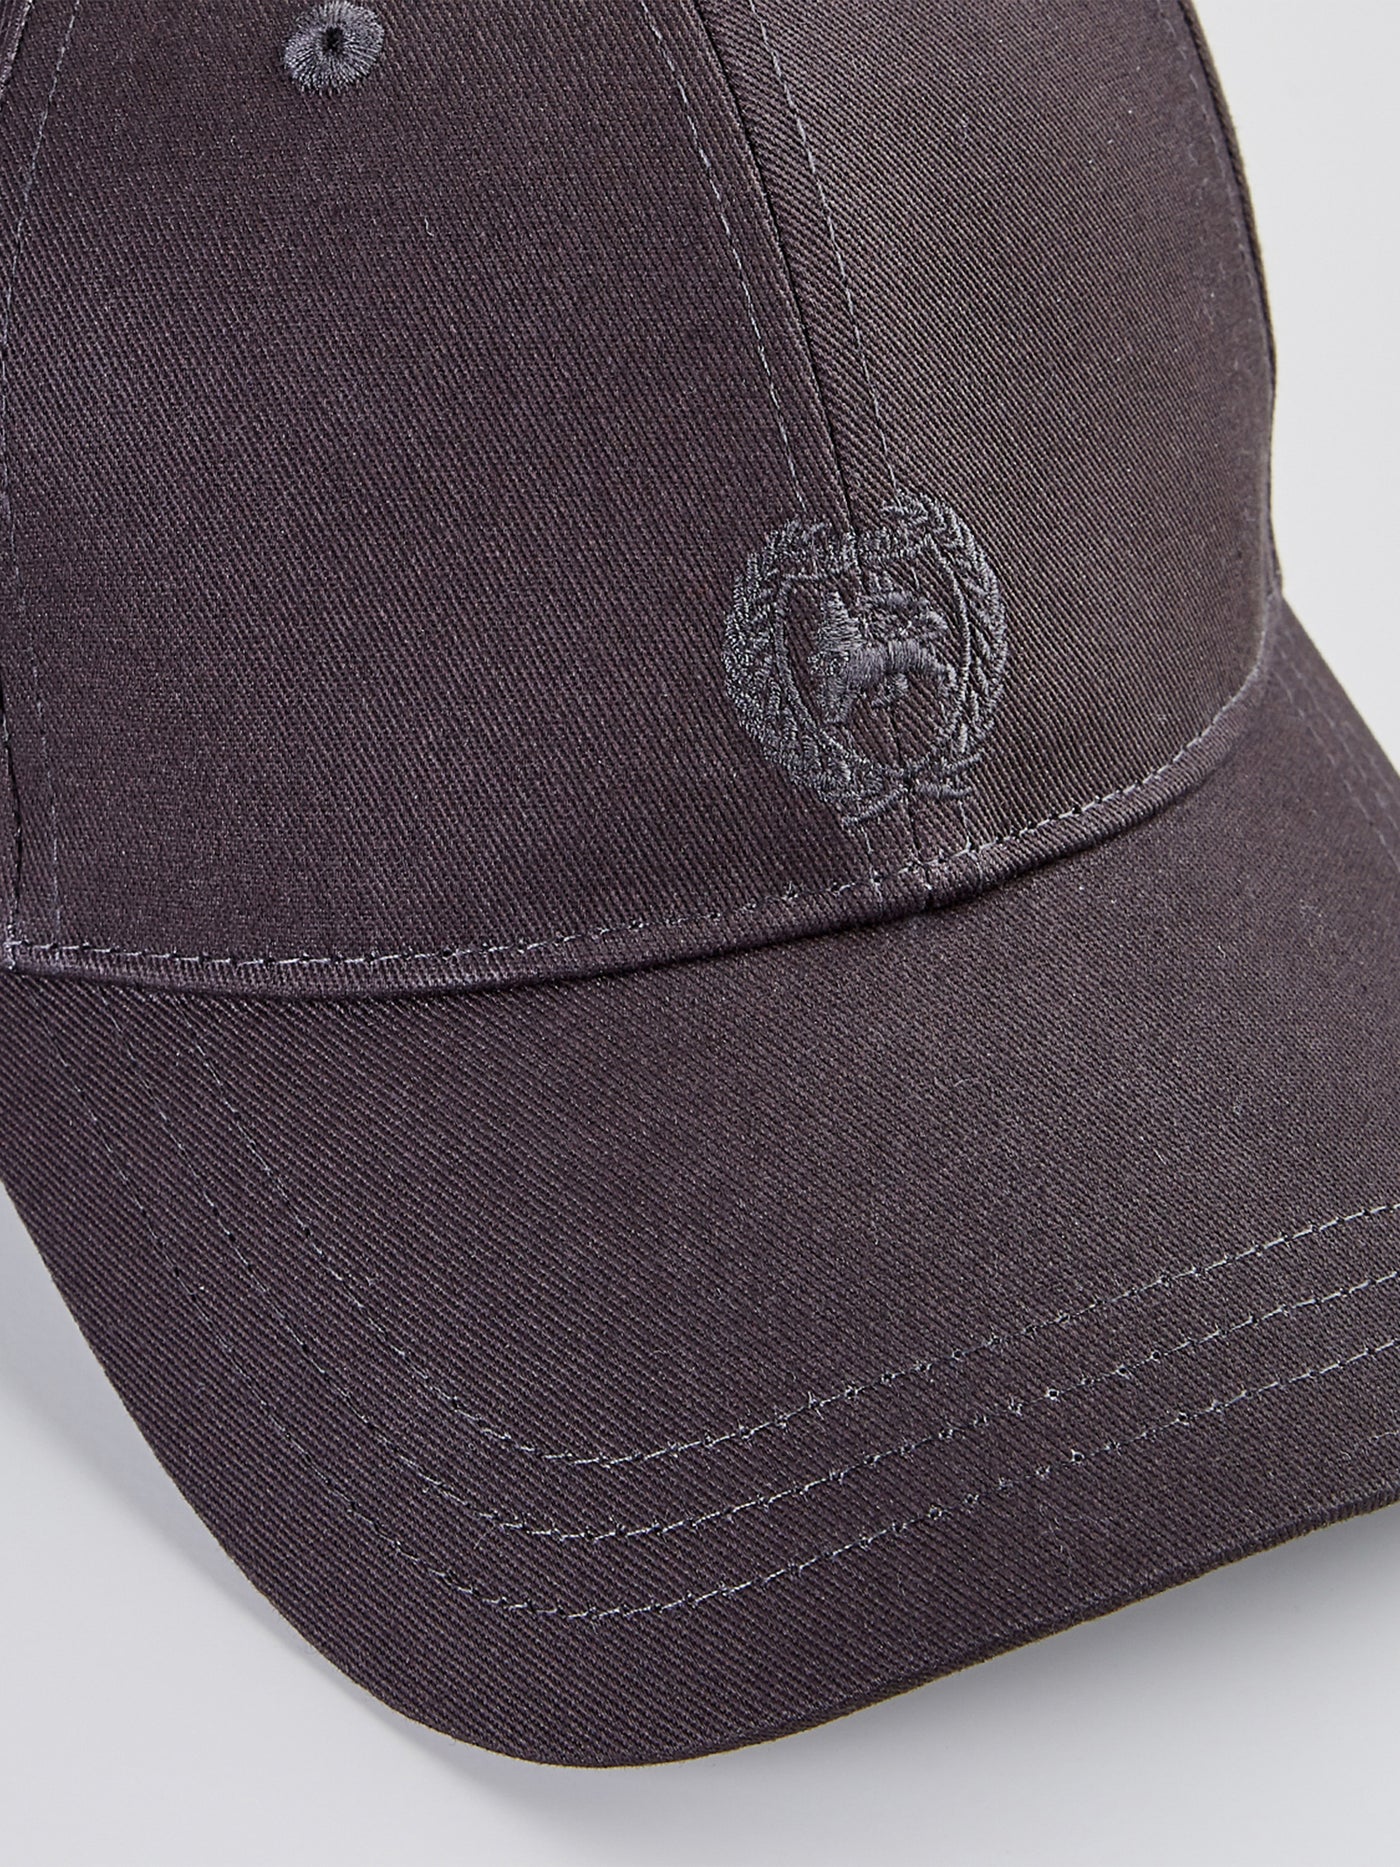 Baseball LERROS cap with – logo SHOP